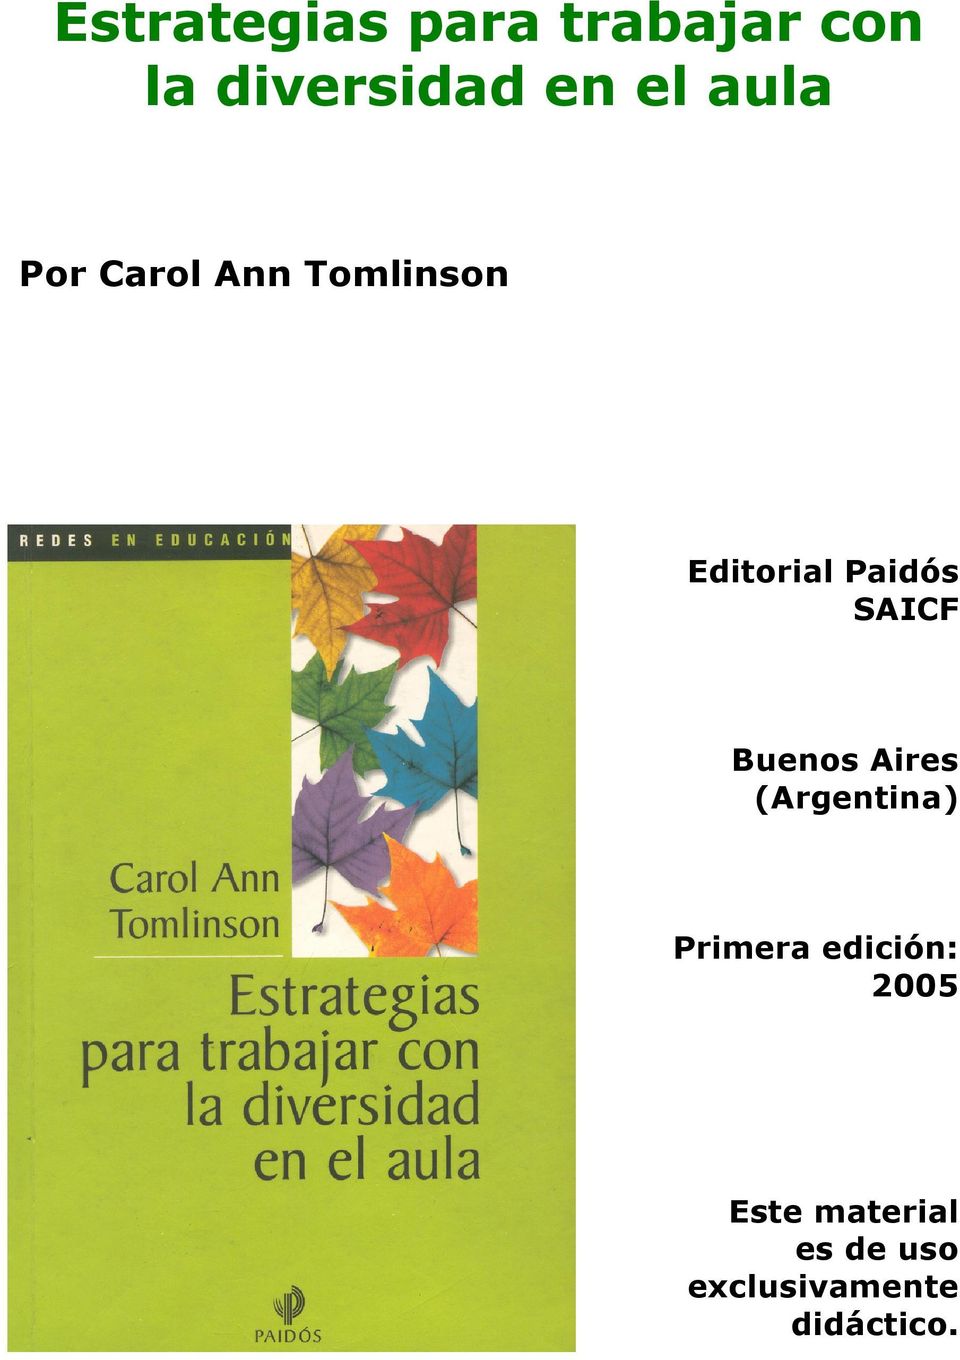 SAICF Buenos Aires (Argentina) Primera edición: